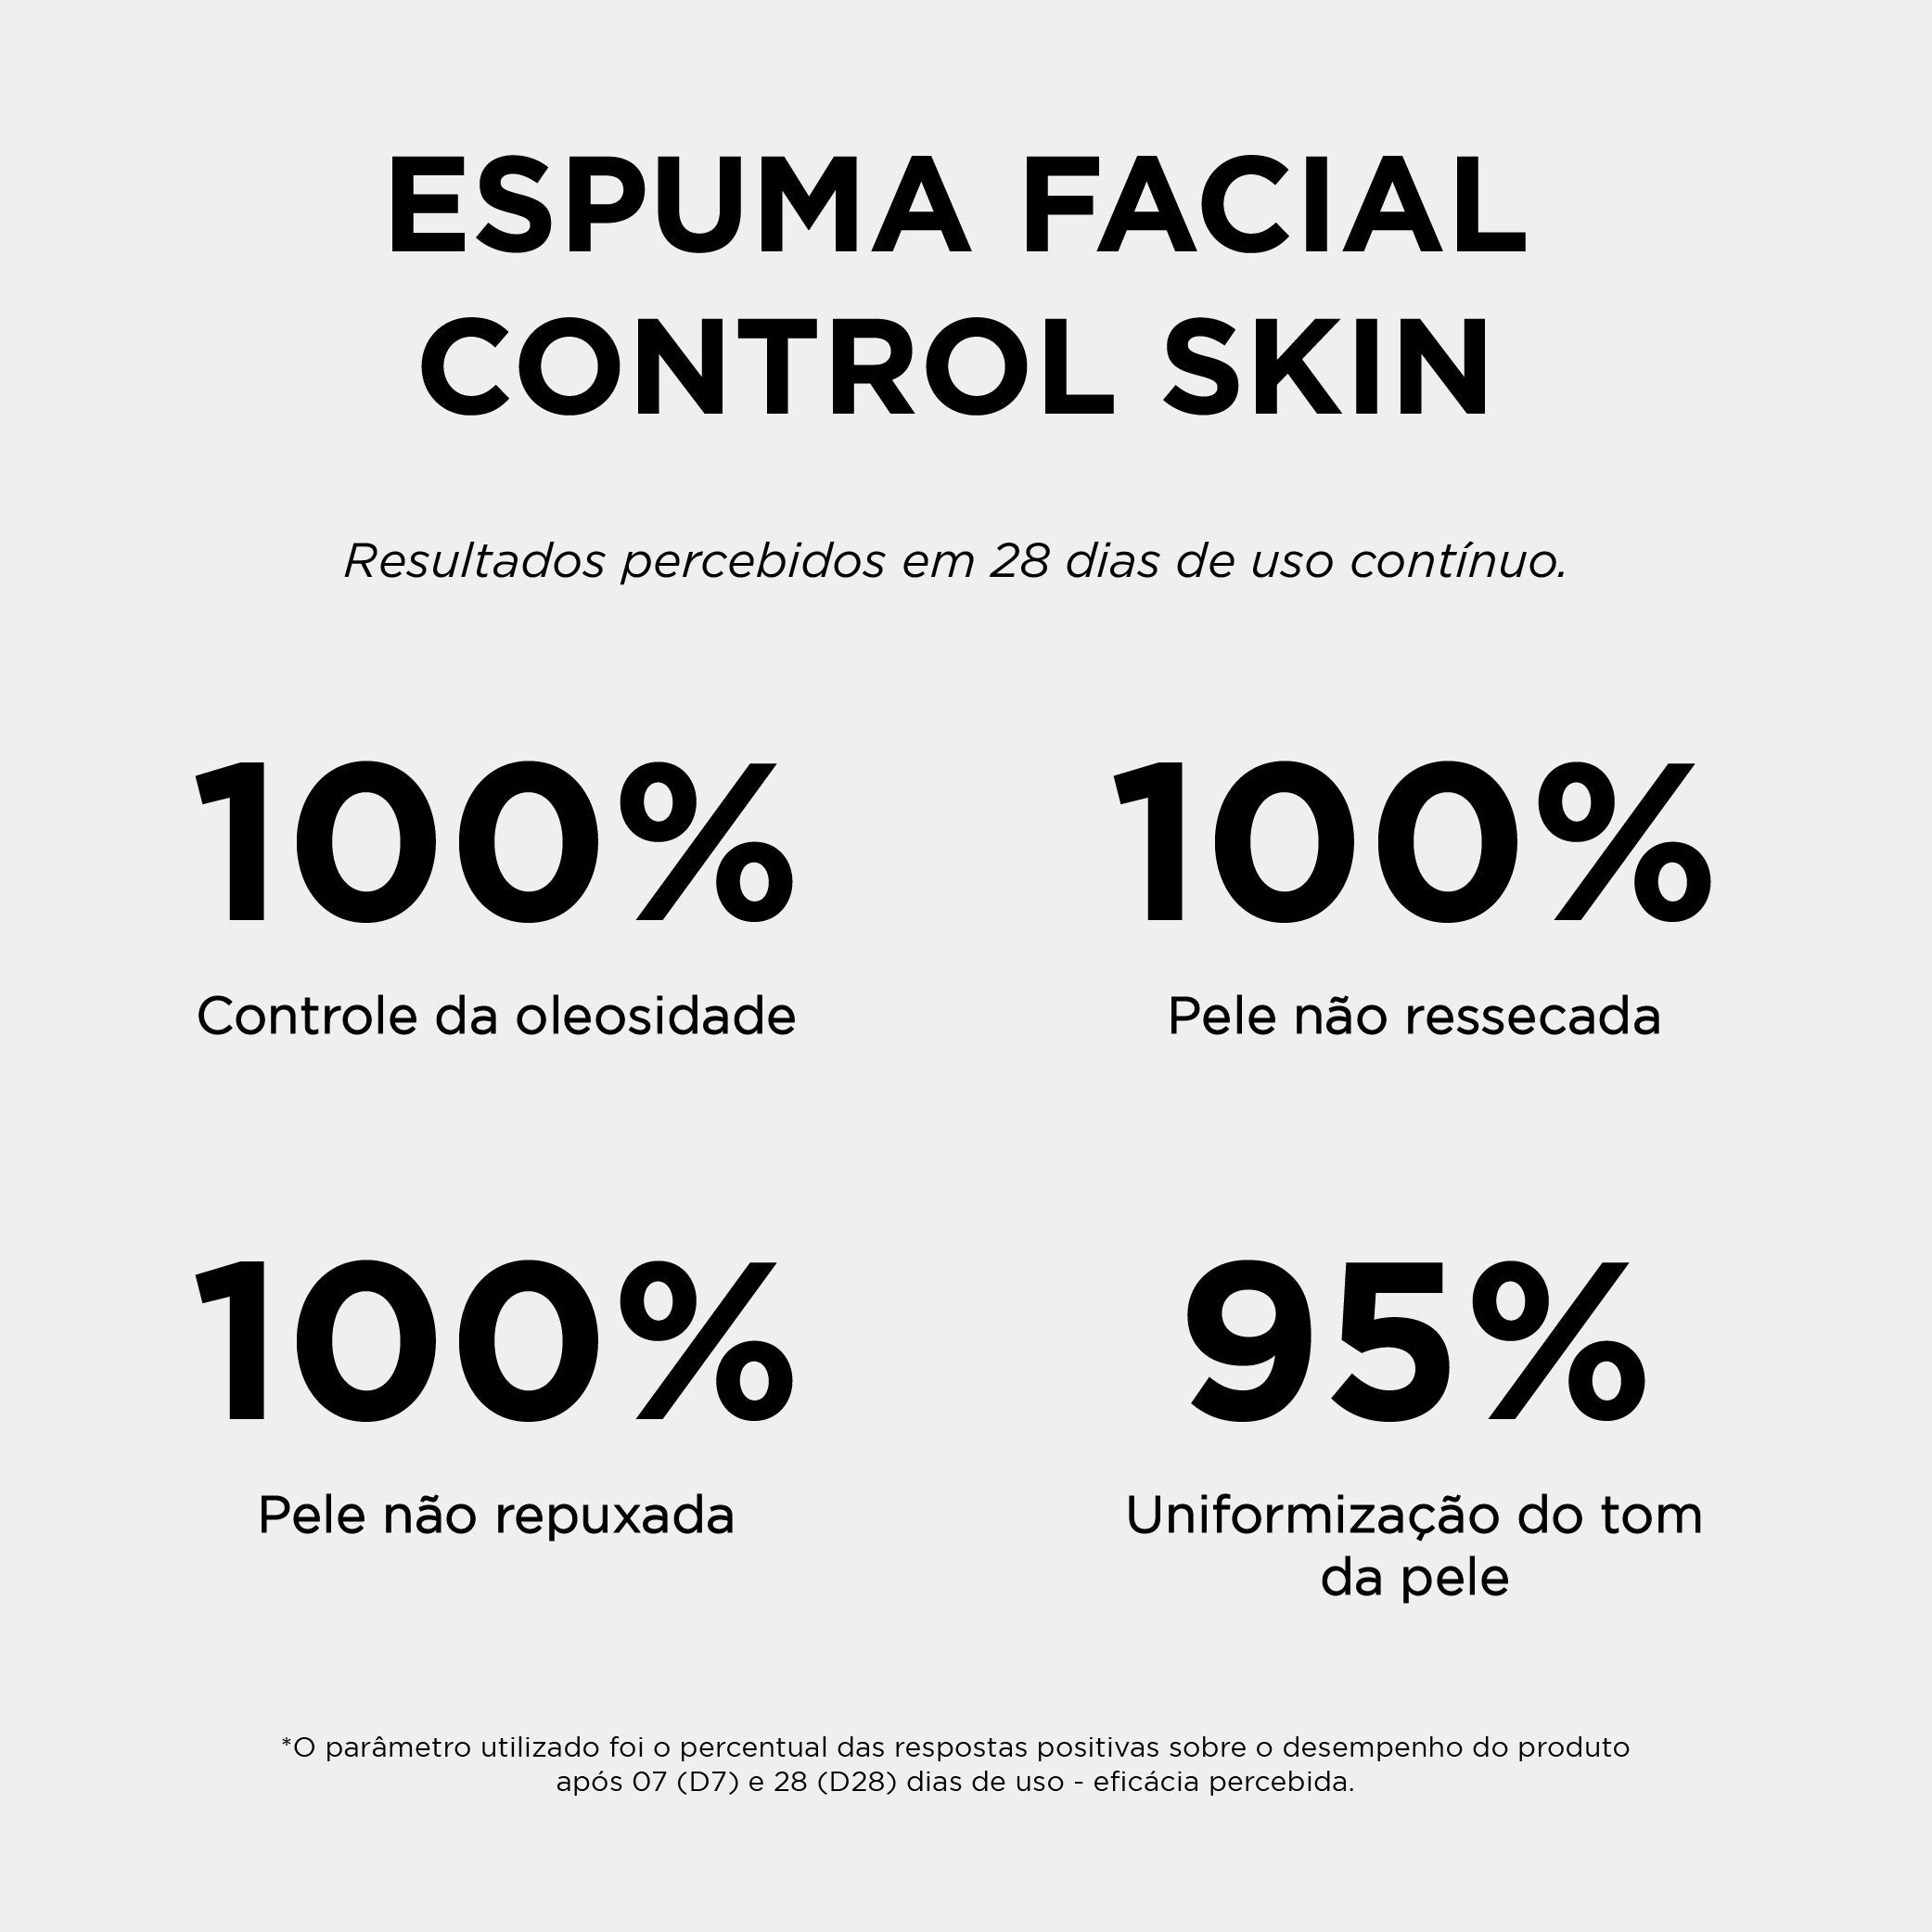 Espuma Facial Control Skin